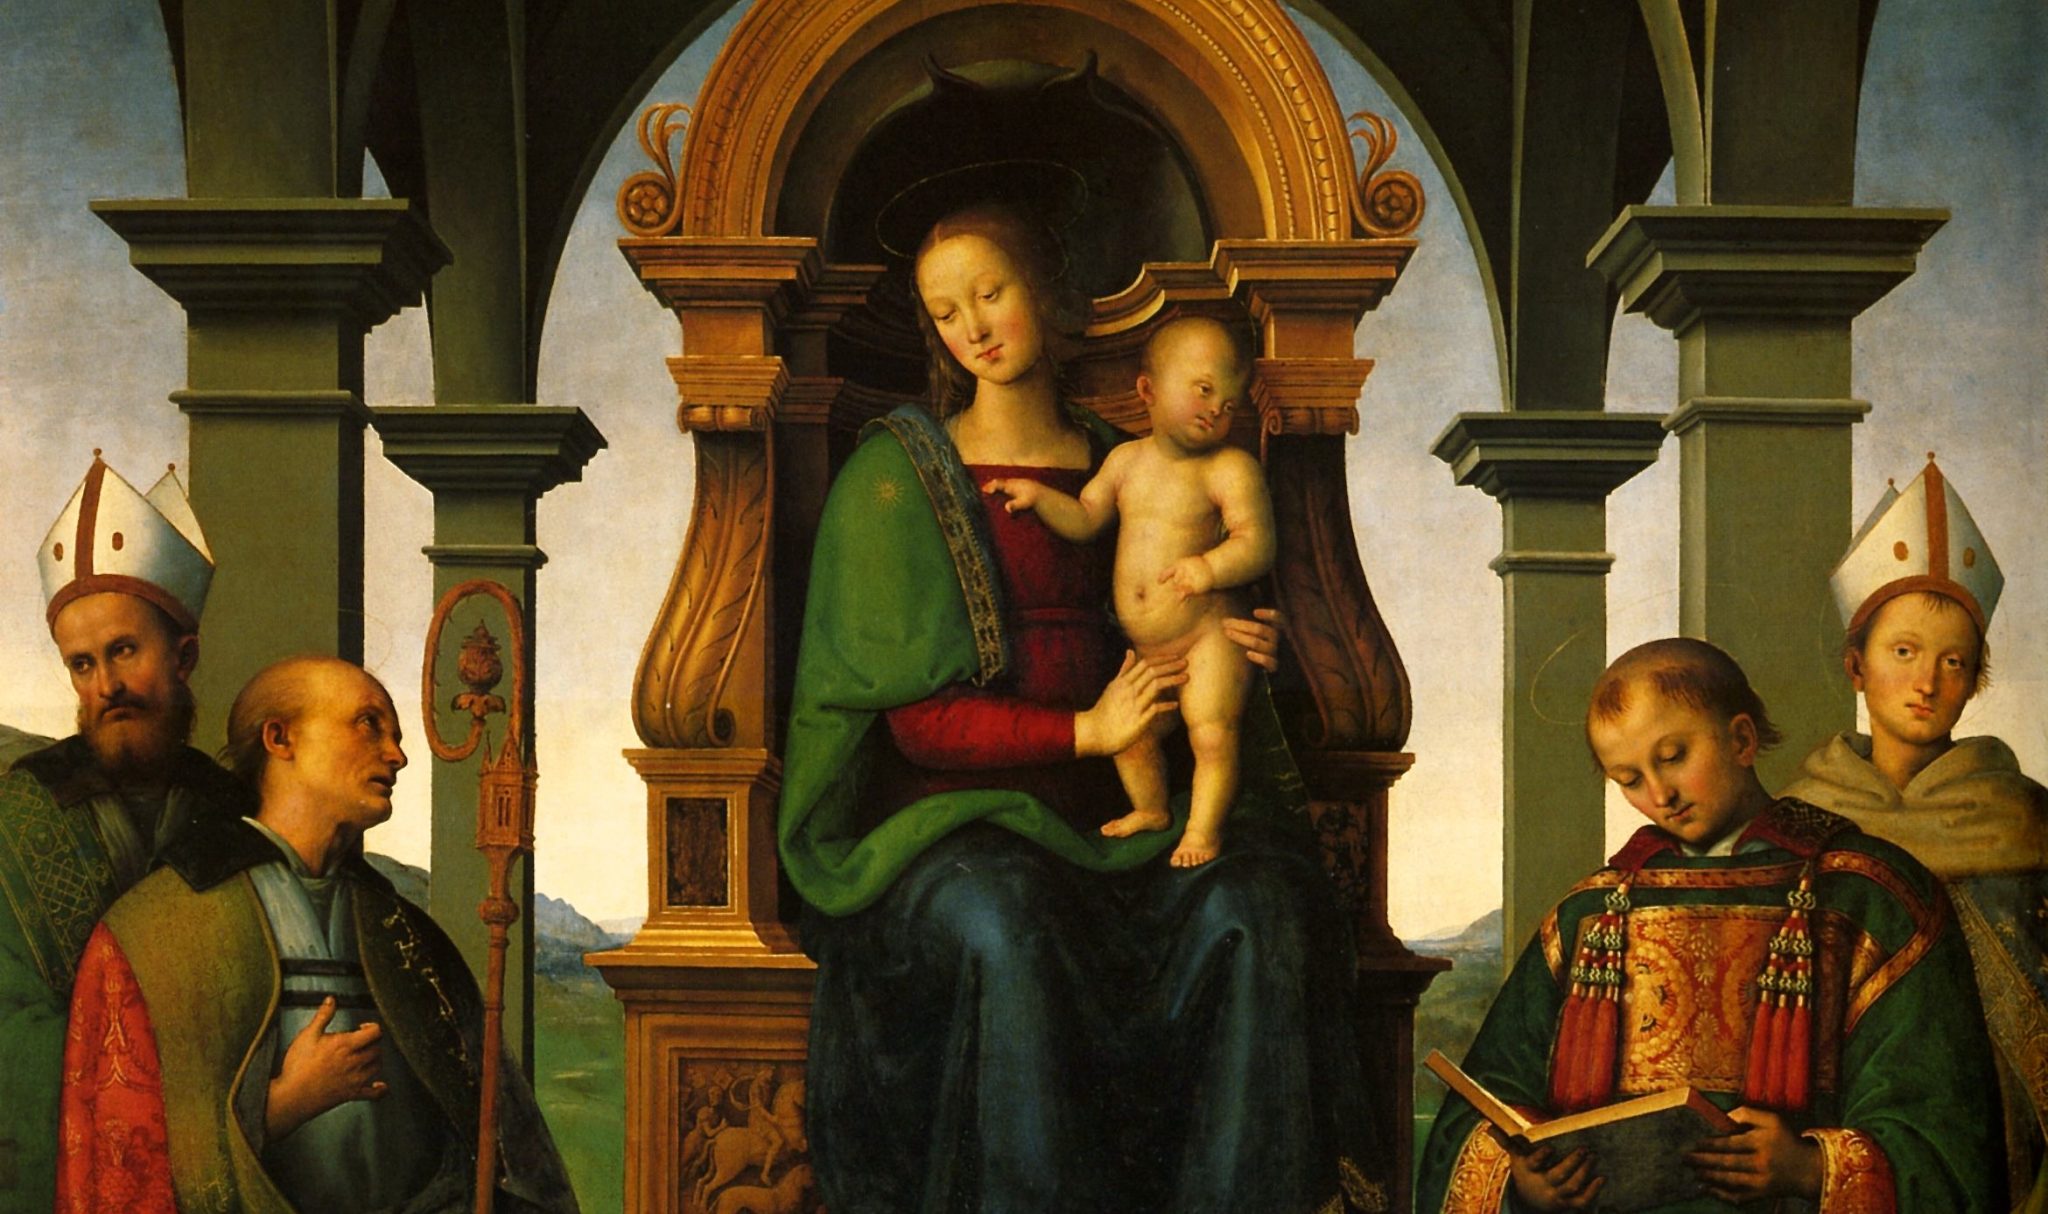 Matrimonio mistico. A Perugia la Pala dei Decemviri del Perugino ritrova cornice e cimasa